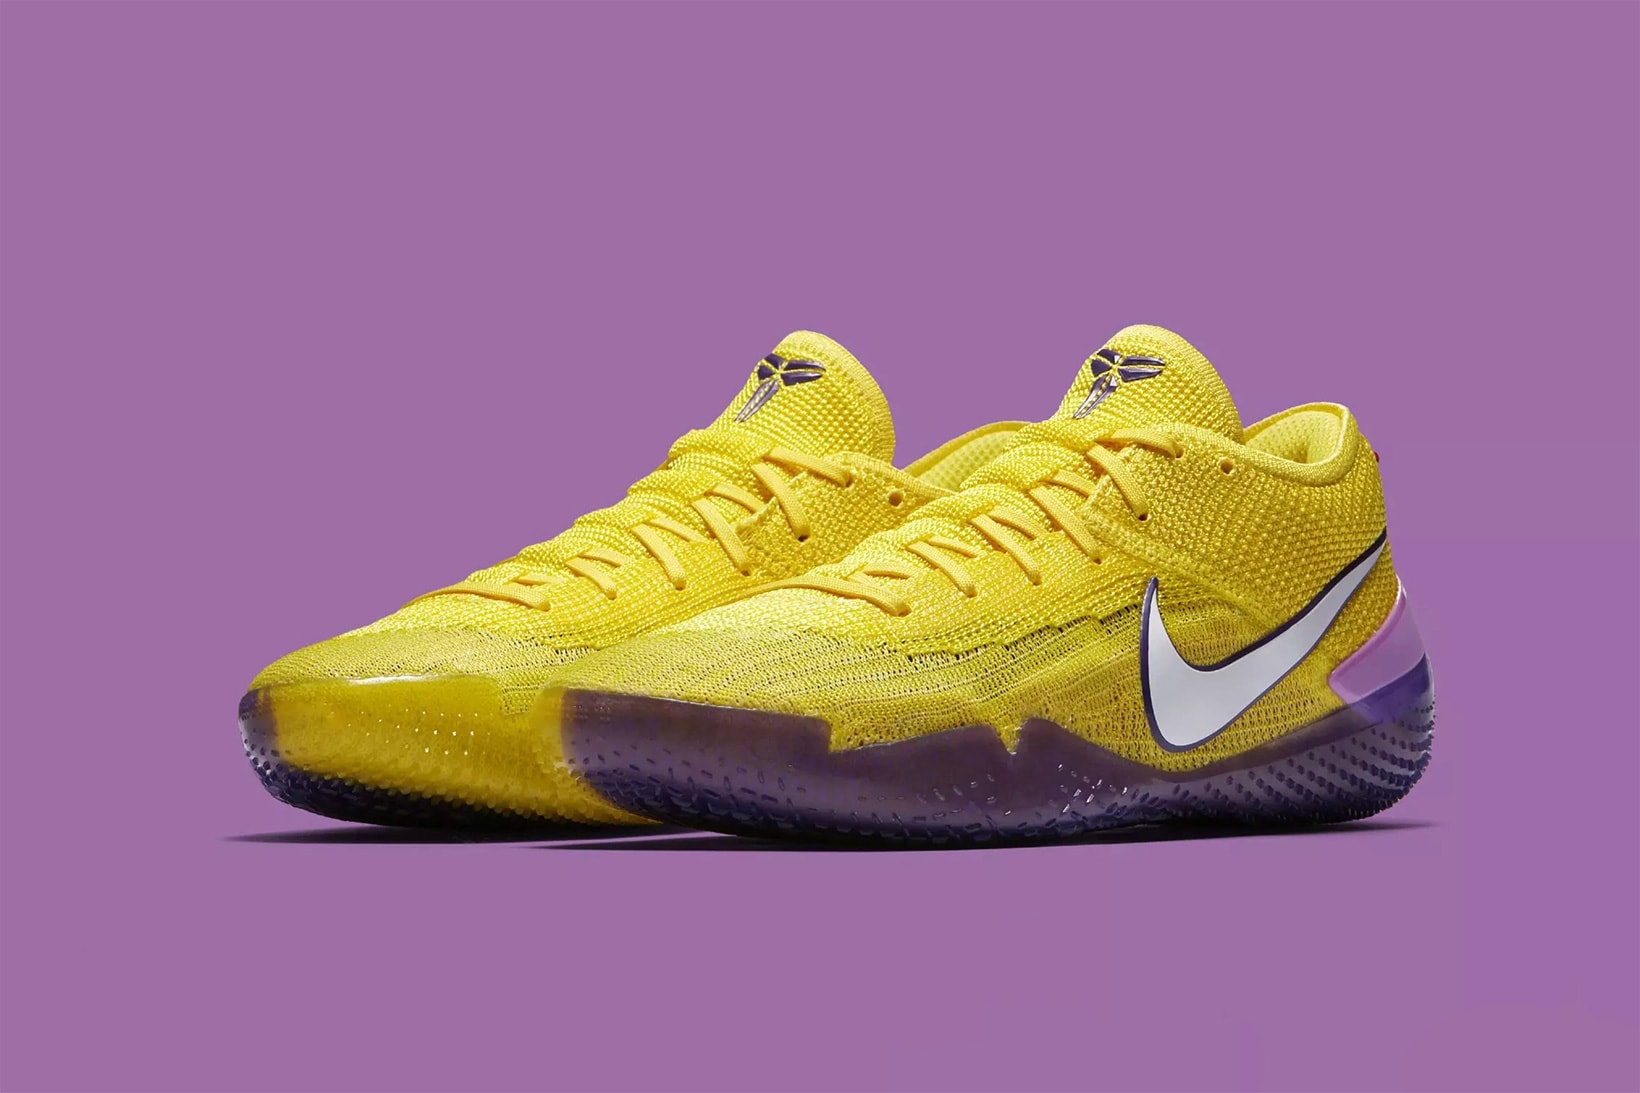 Nike Kobe AD NXT 360 Lakers purple gold footwear Kobe Bryant Los Angeles Lakers 2018 may